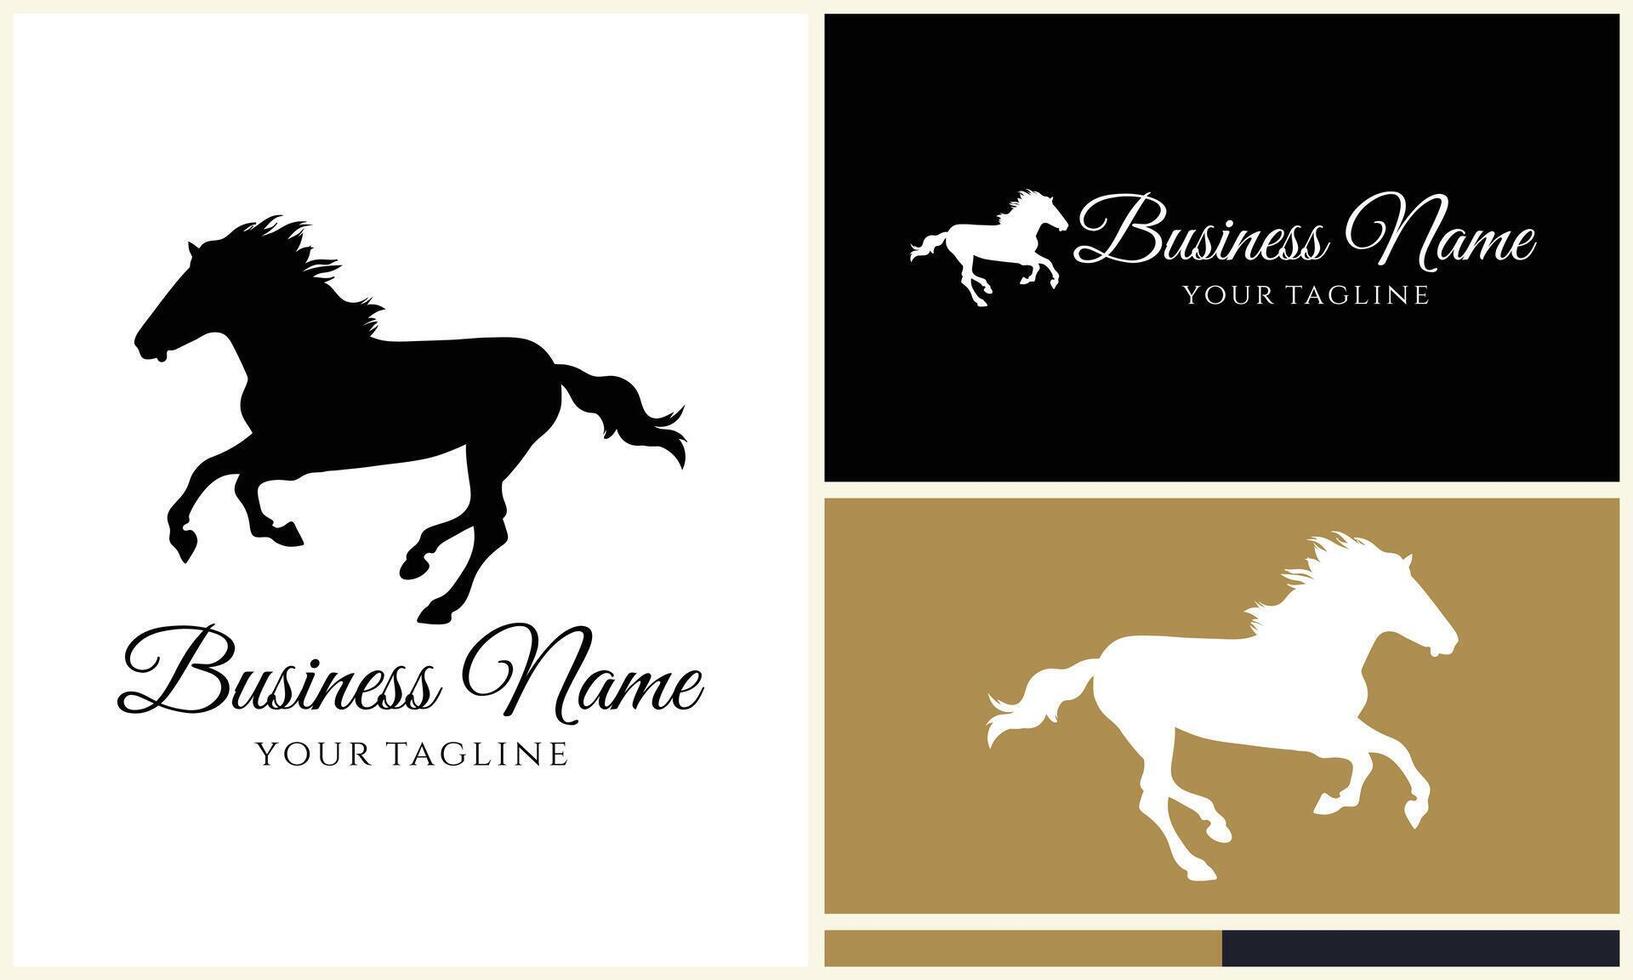 silhouette vector horse logo template